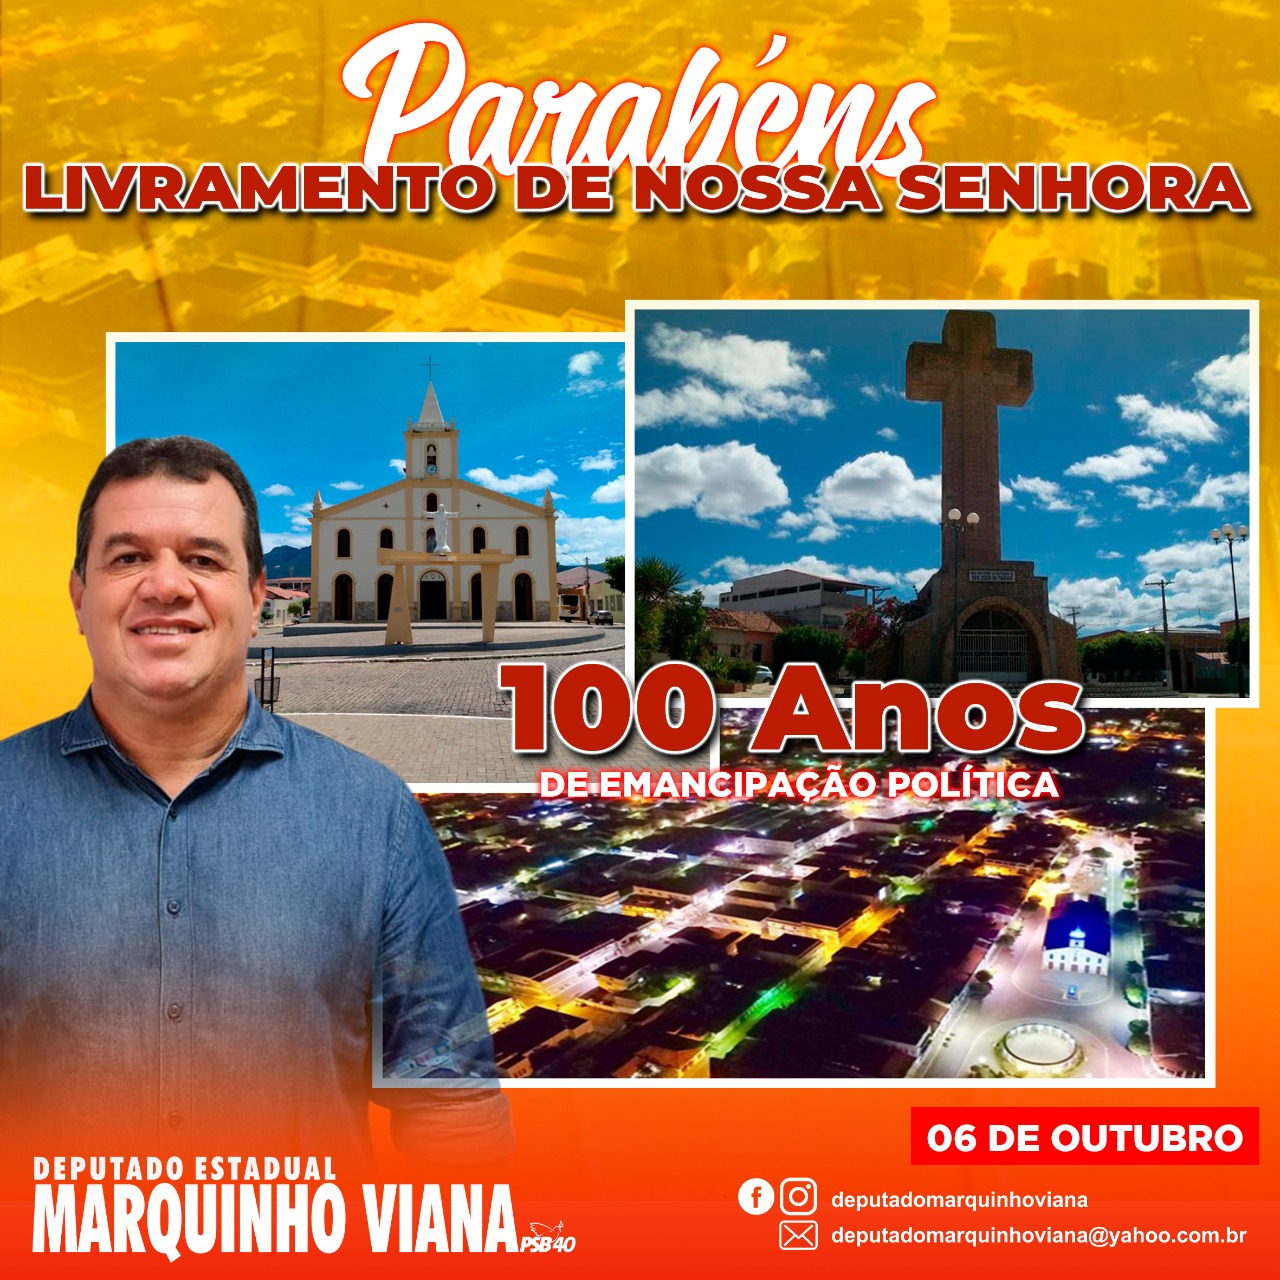 Deputado Marquinho Viana parabeniza Livramento pelos 100 anos de emancipação política